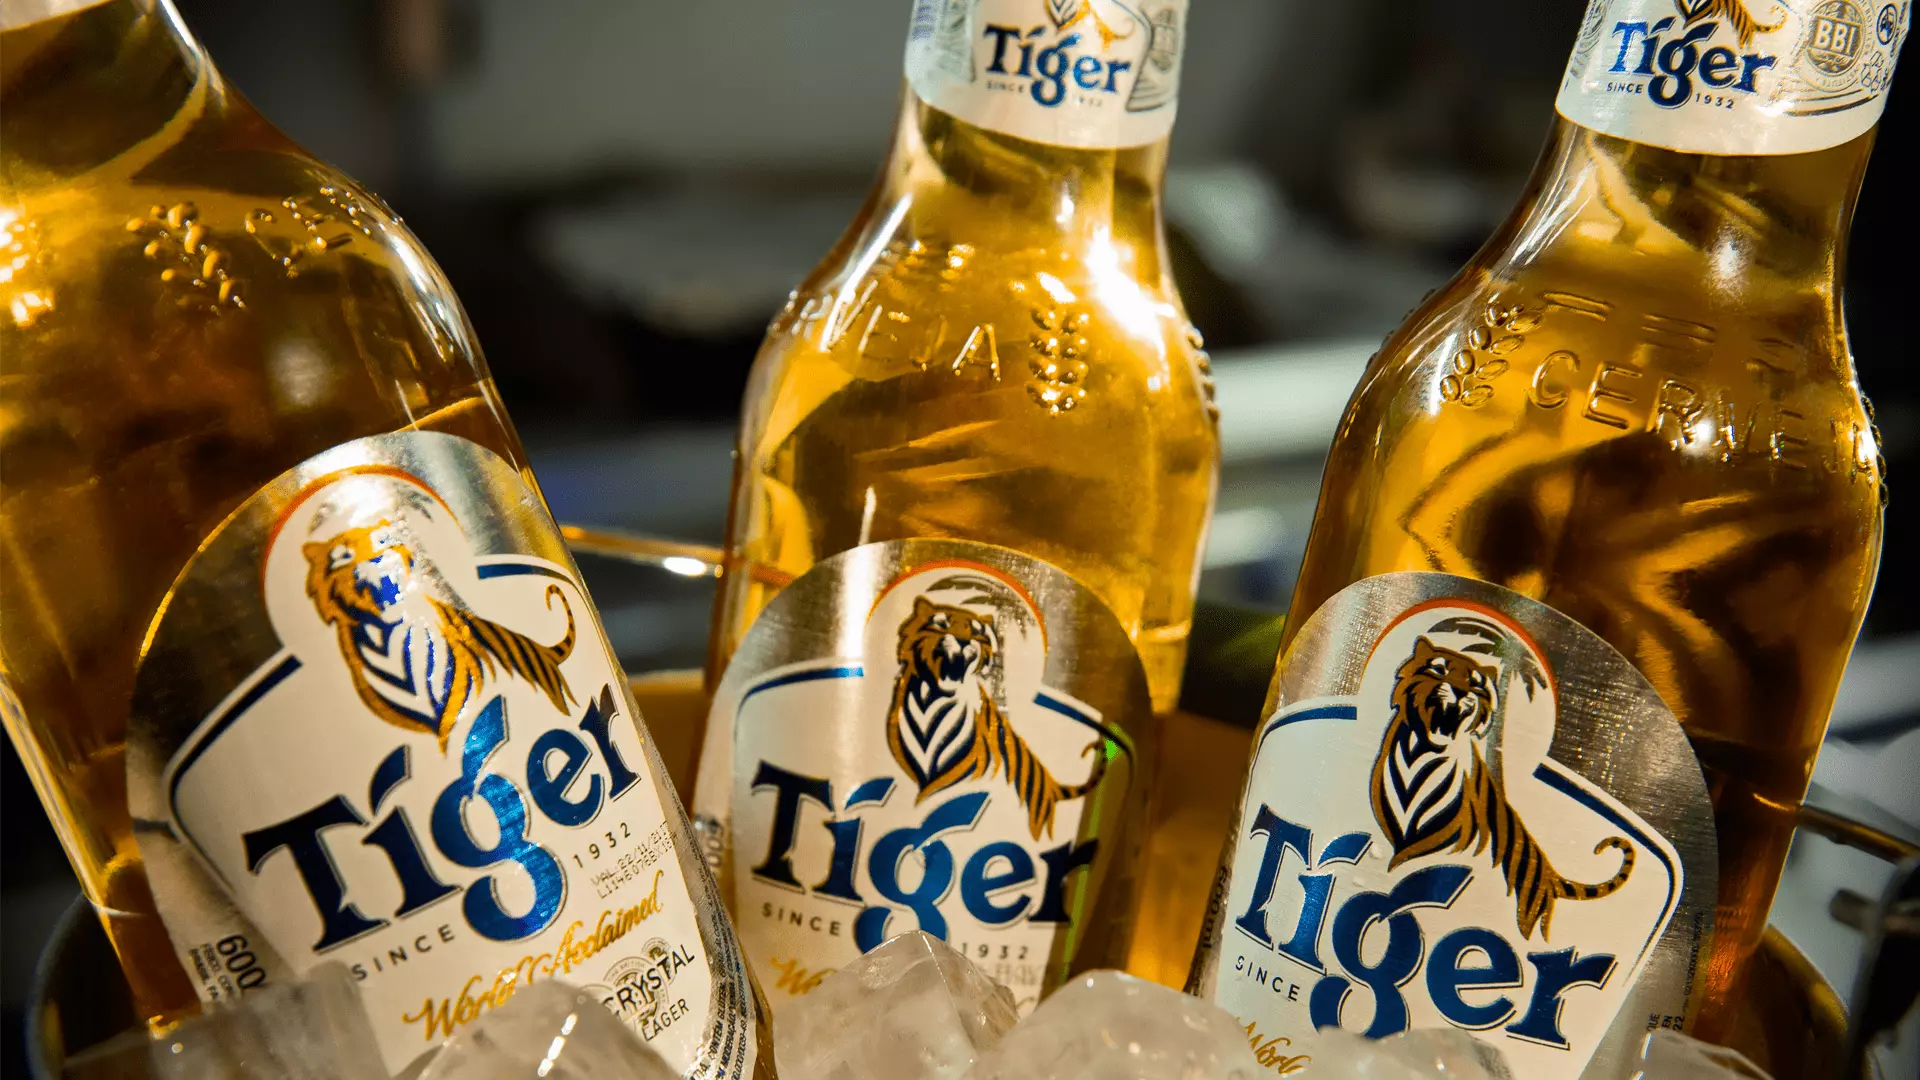 3 garrafas de Tiger em um recipiente com gelo